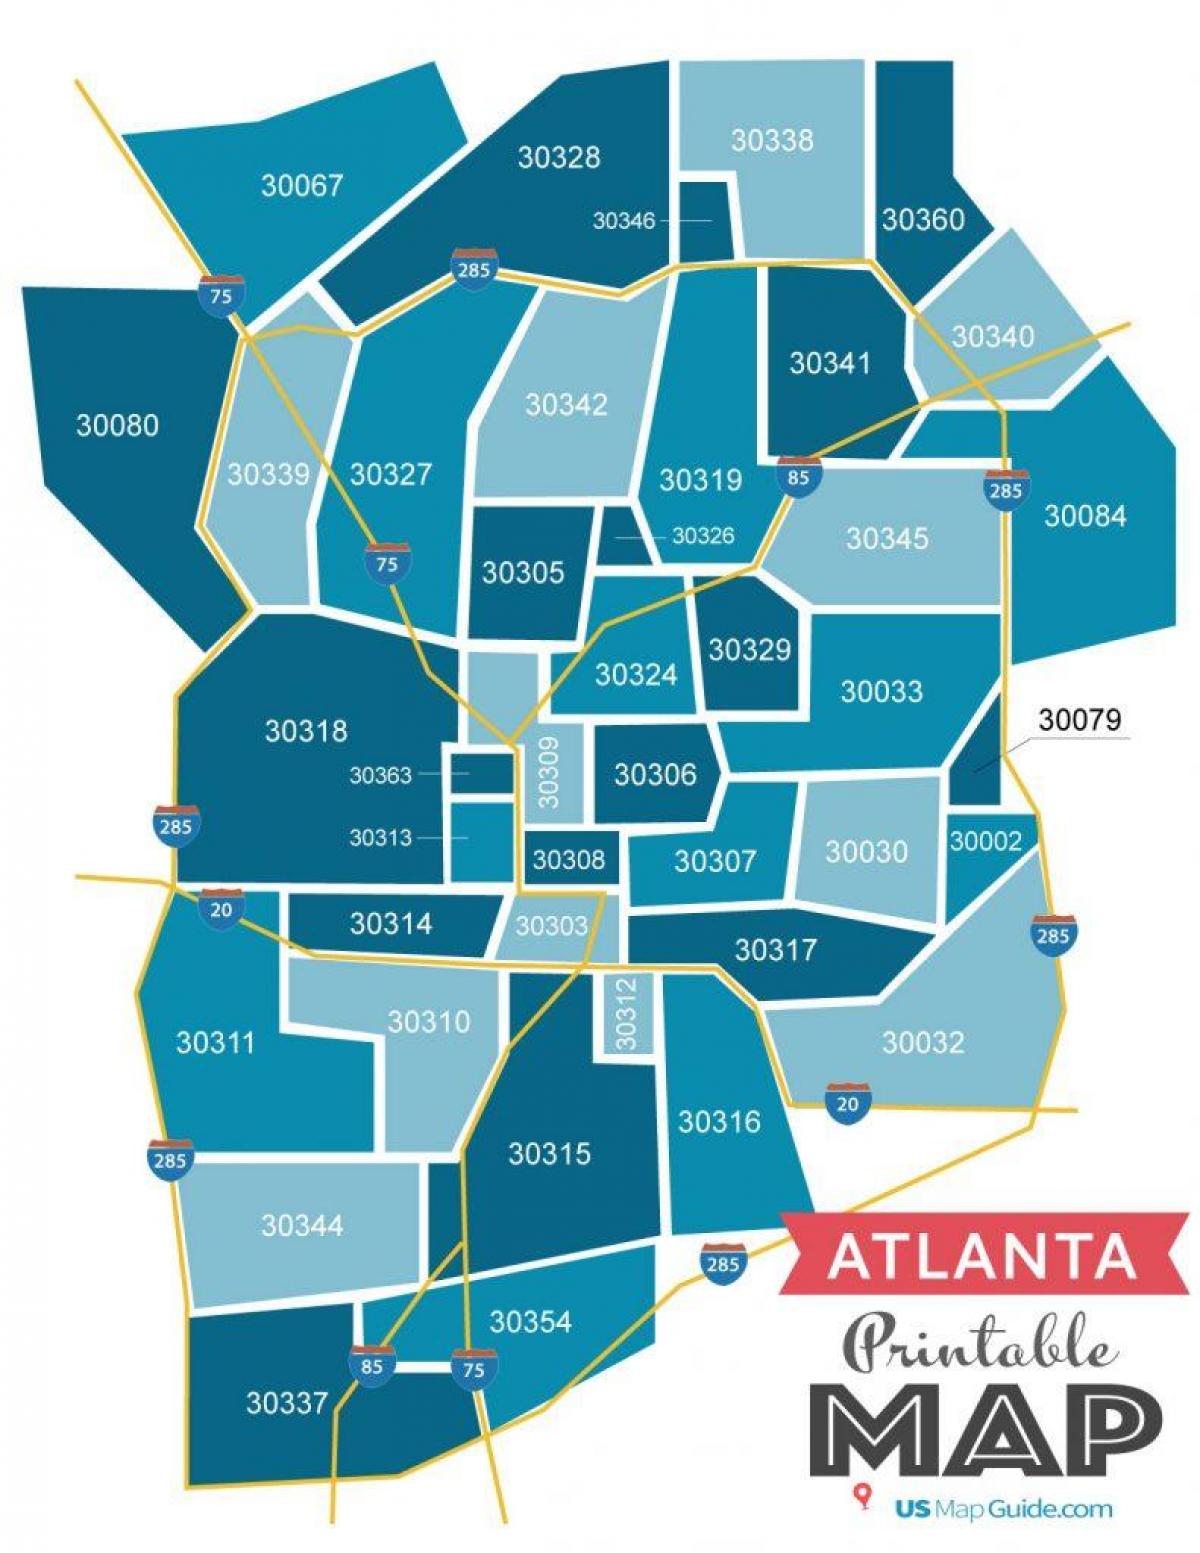 Plan des codes postaux de Atlanta